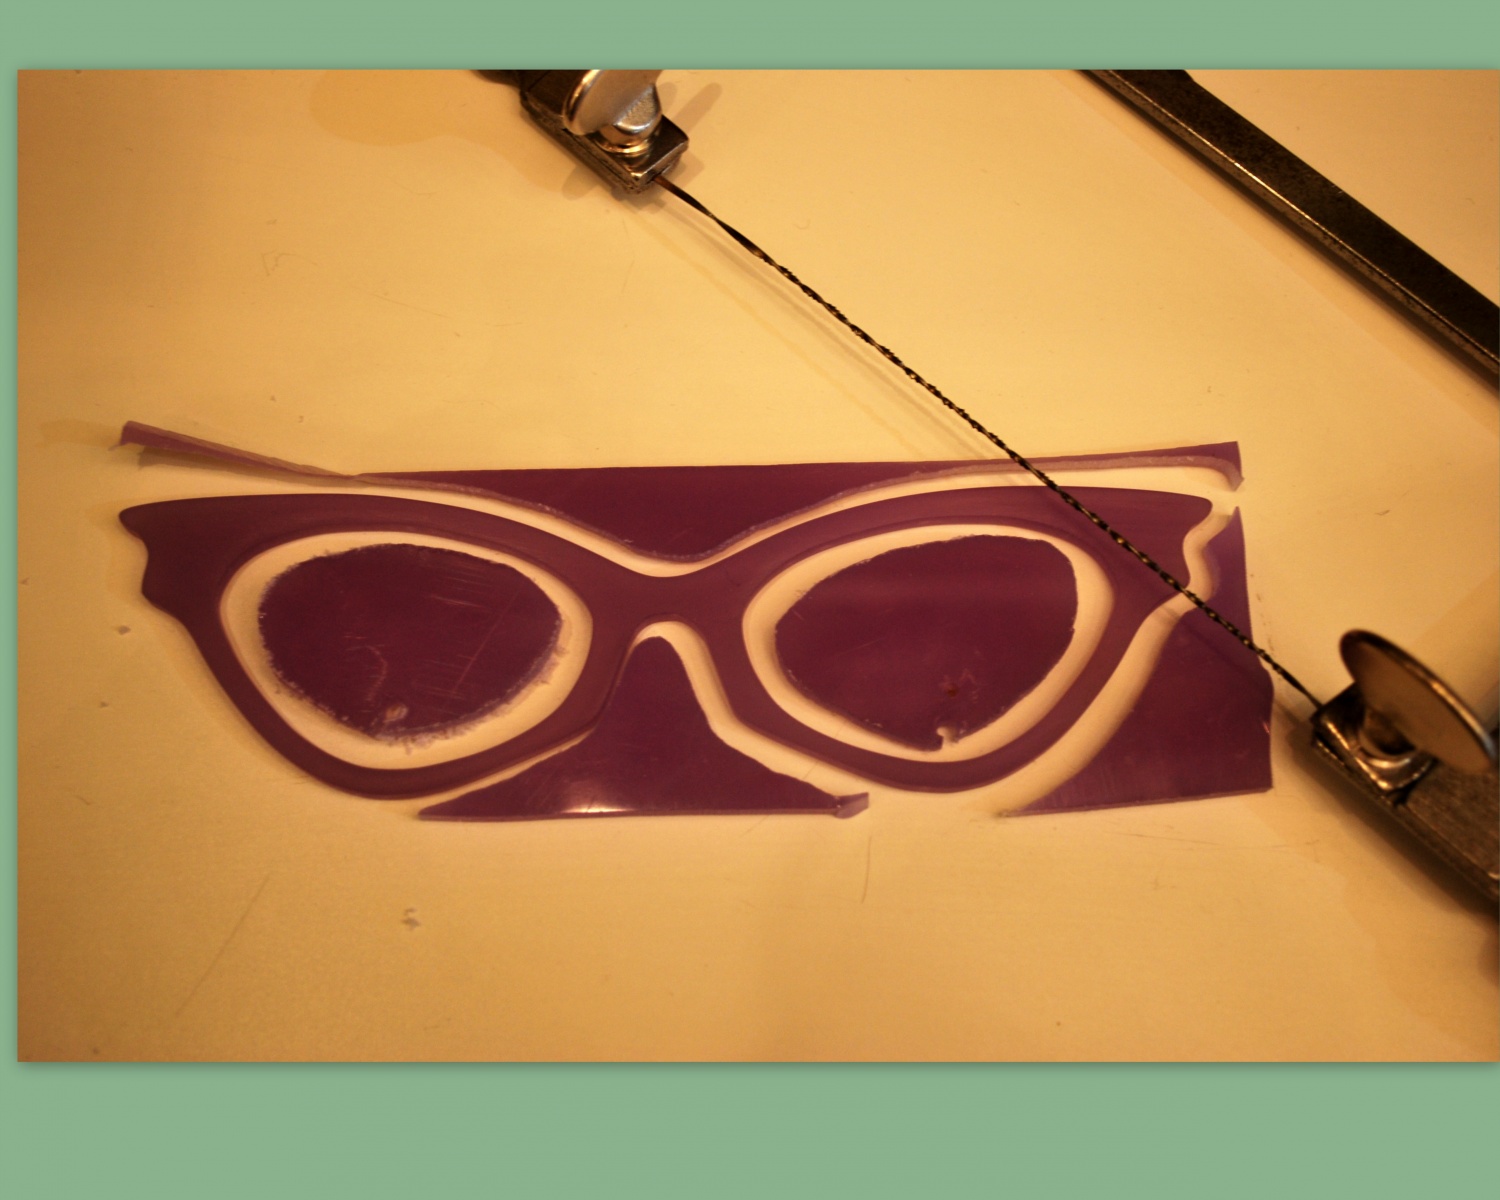 création, réalisation d'une lunette sur mesure - créations michèle b ,  lunettes sur mesure